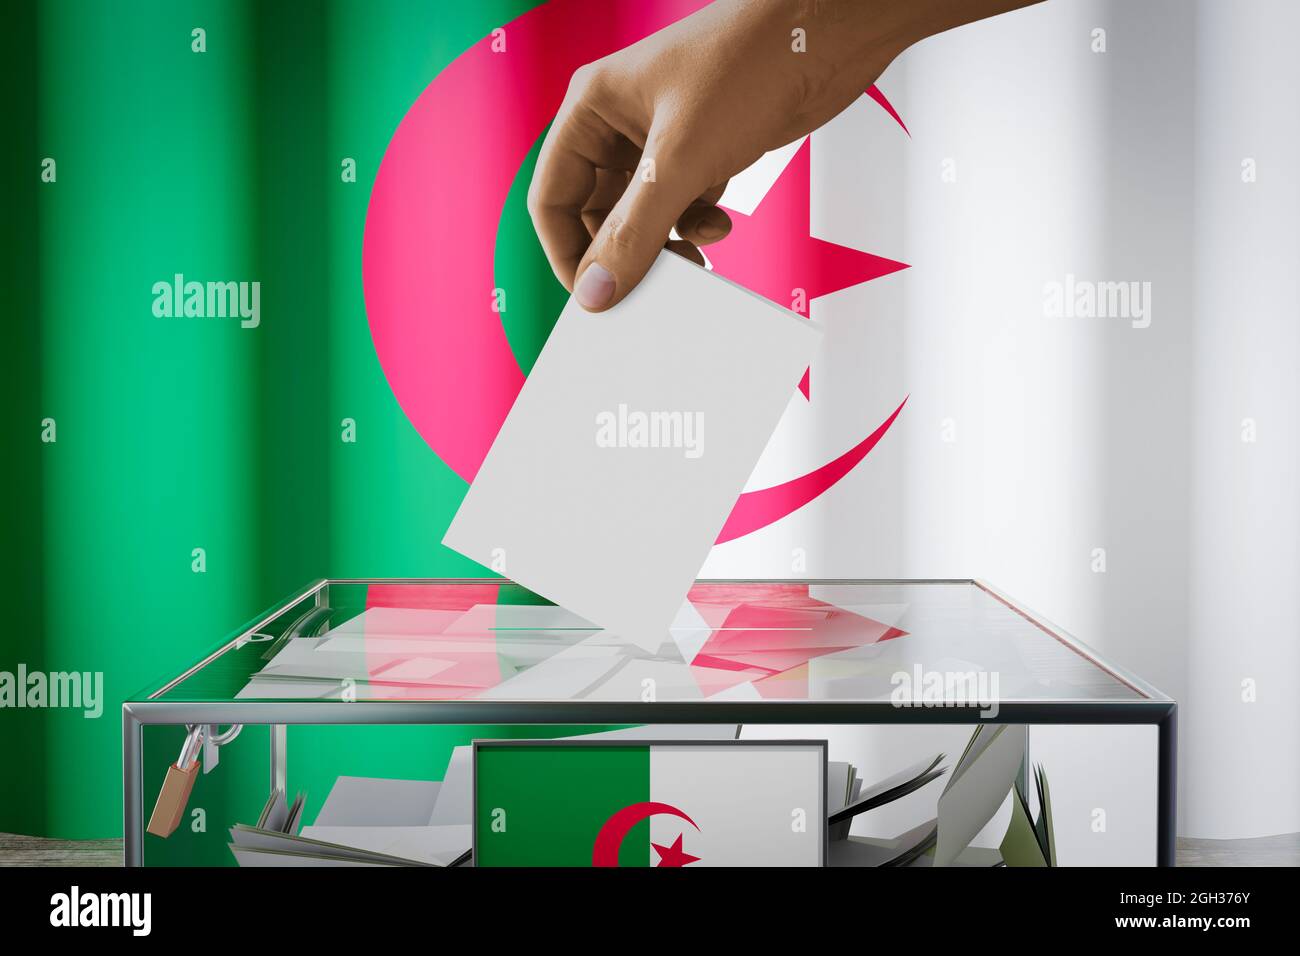 Drapeau algérien, déposer la carte de vote dans une boîte - vote, concept  d'élection - illustration 3D Photo Stock - Alamy